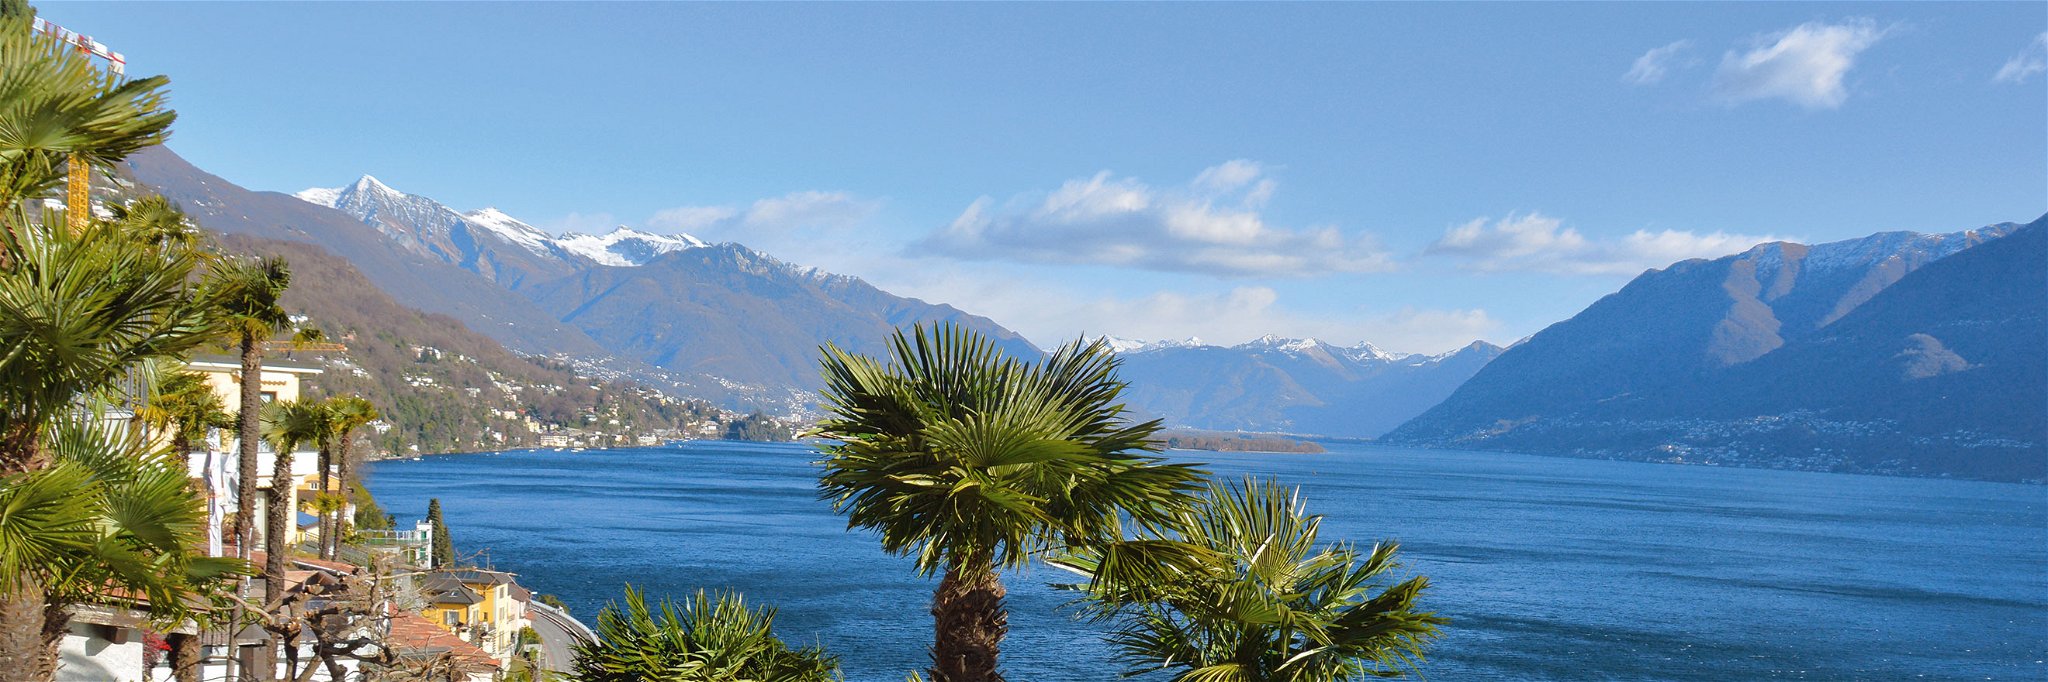 Atemberaubend: Blick über den Lago Maggiore, der über die Grenze nach Italien verläuft.